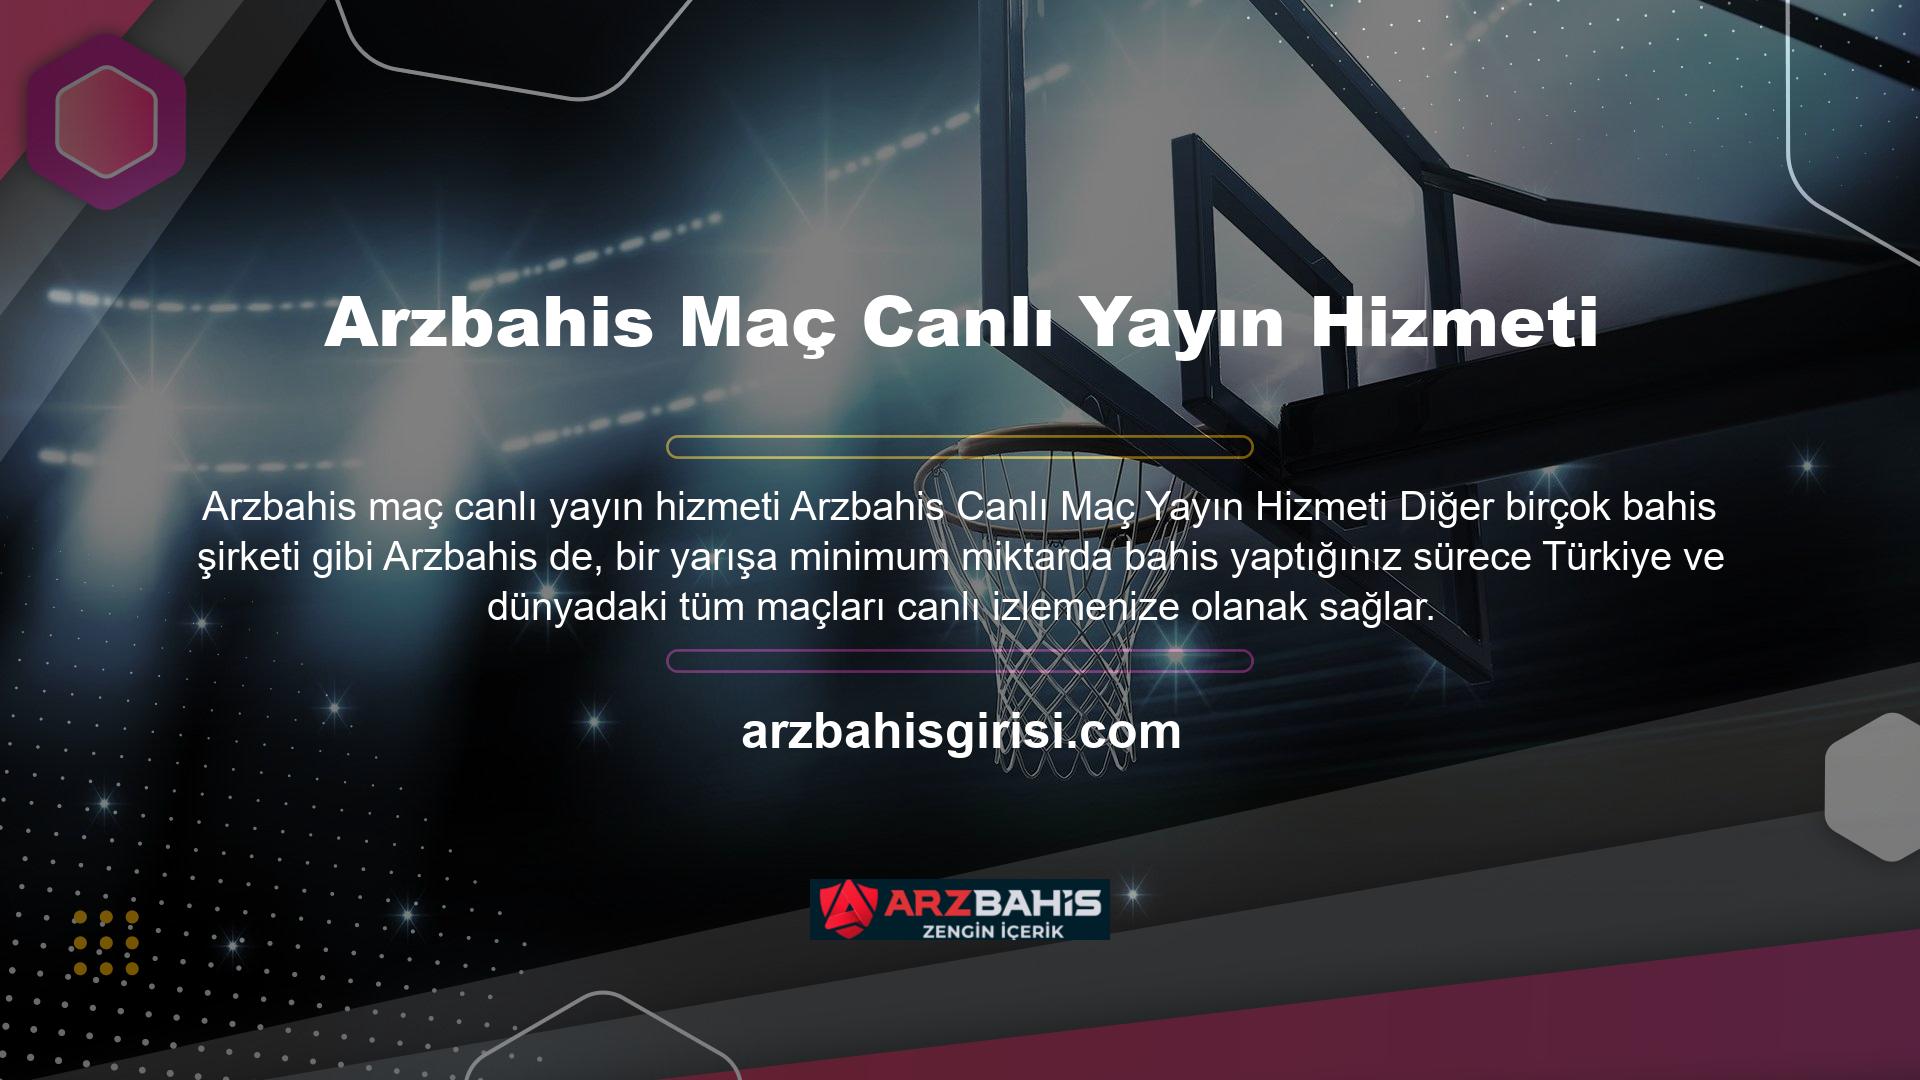 Canlı bahis ile diğer spor karşılaşmalarının canlı yayınlarını izlemeyi seviyorsanız, Arzbahis web sitesindeki Arzbahis TV hizmeti oldukça etkilidir